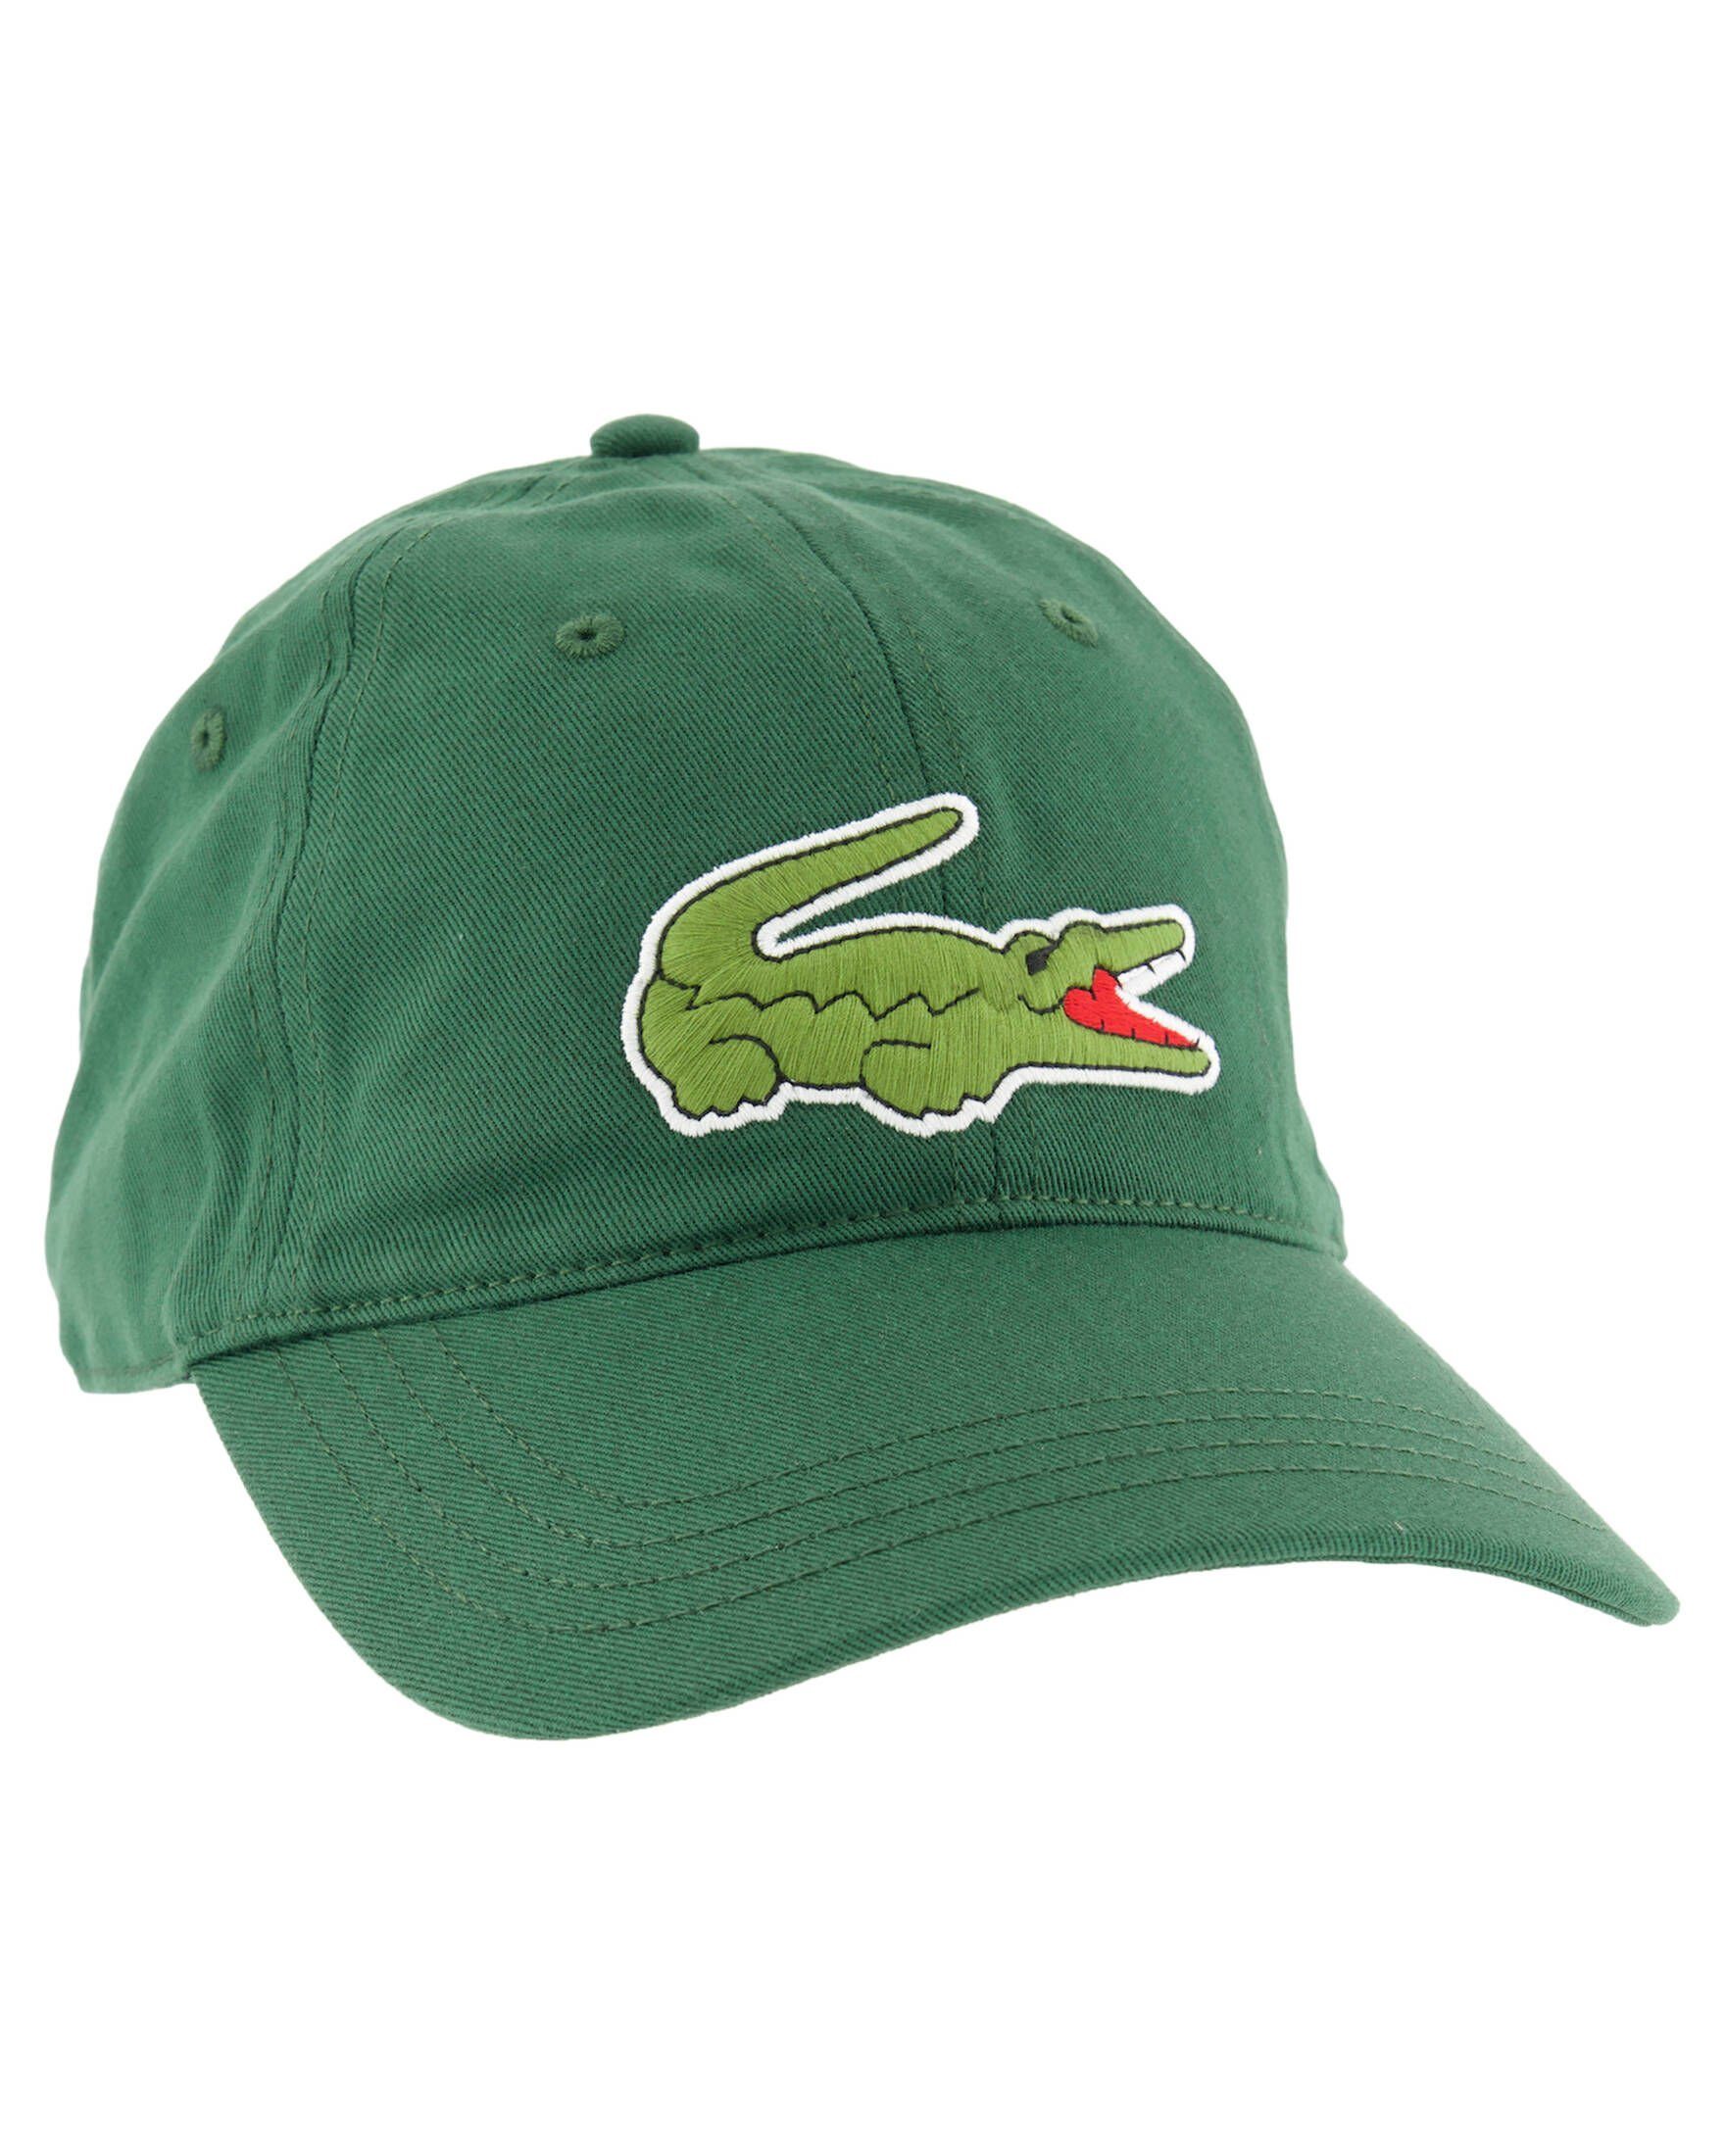 (43) Schildmütze Visor CAP Lacoste grün